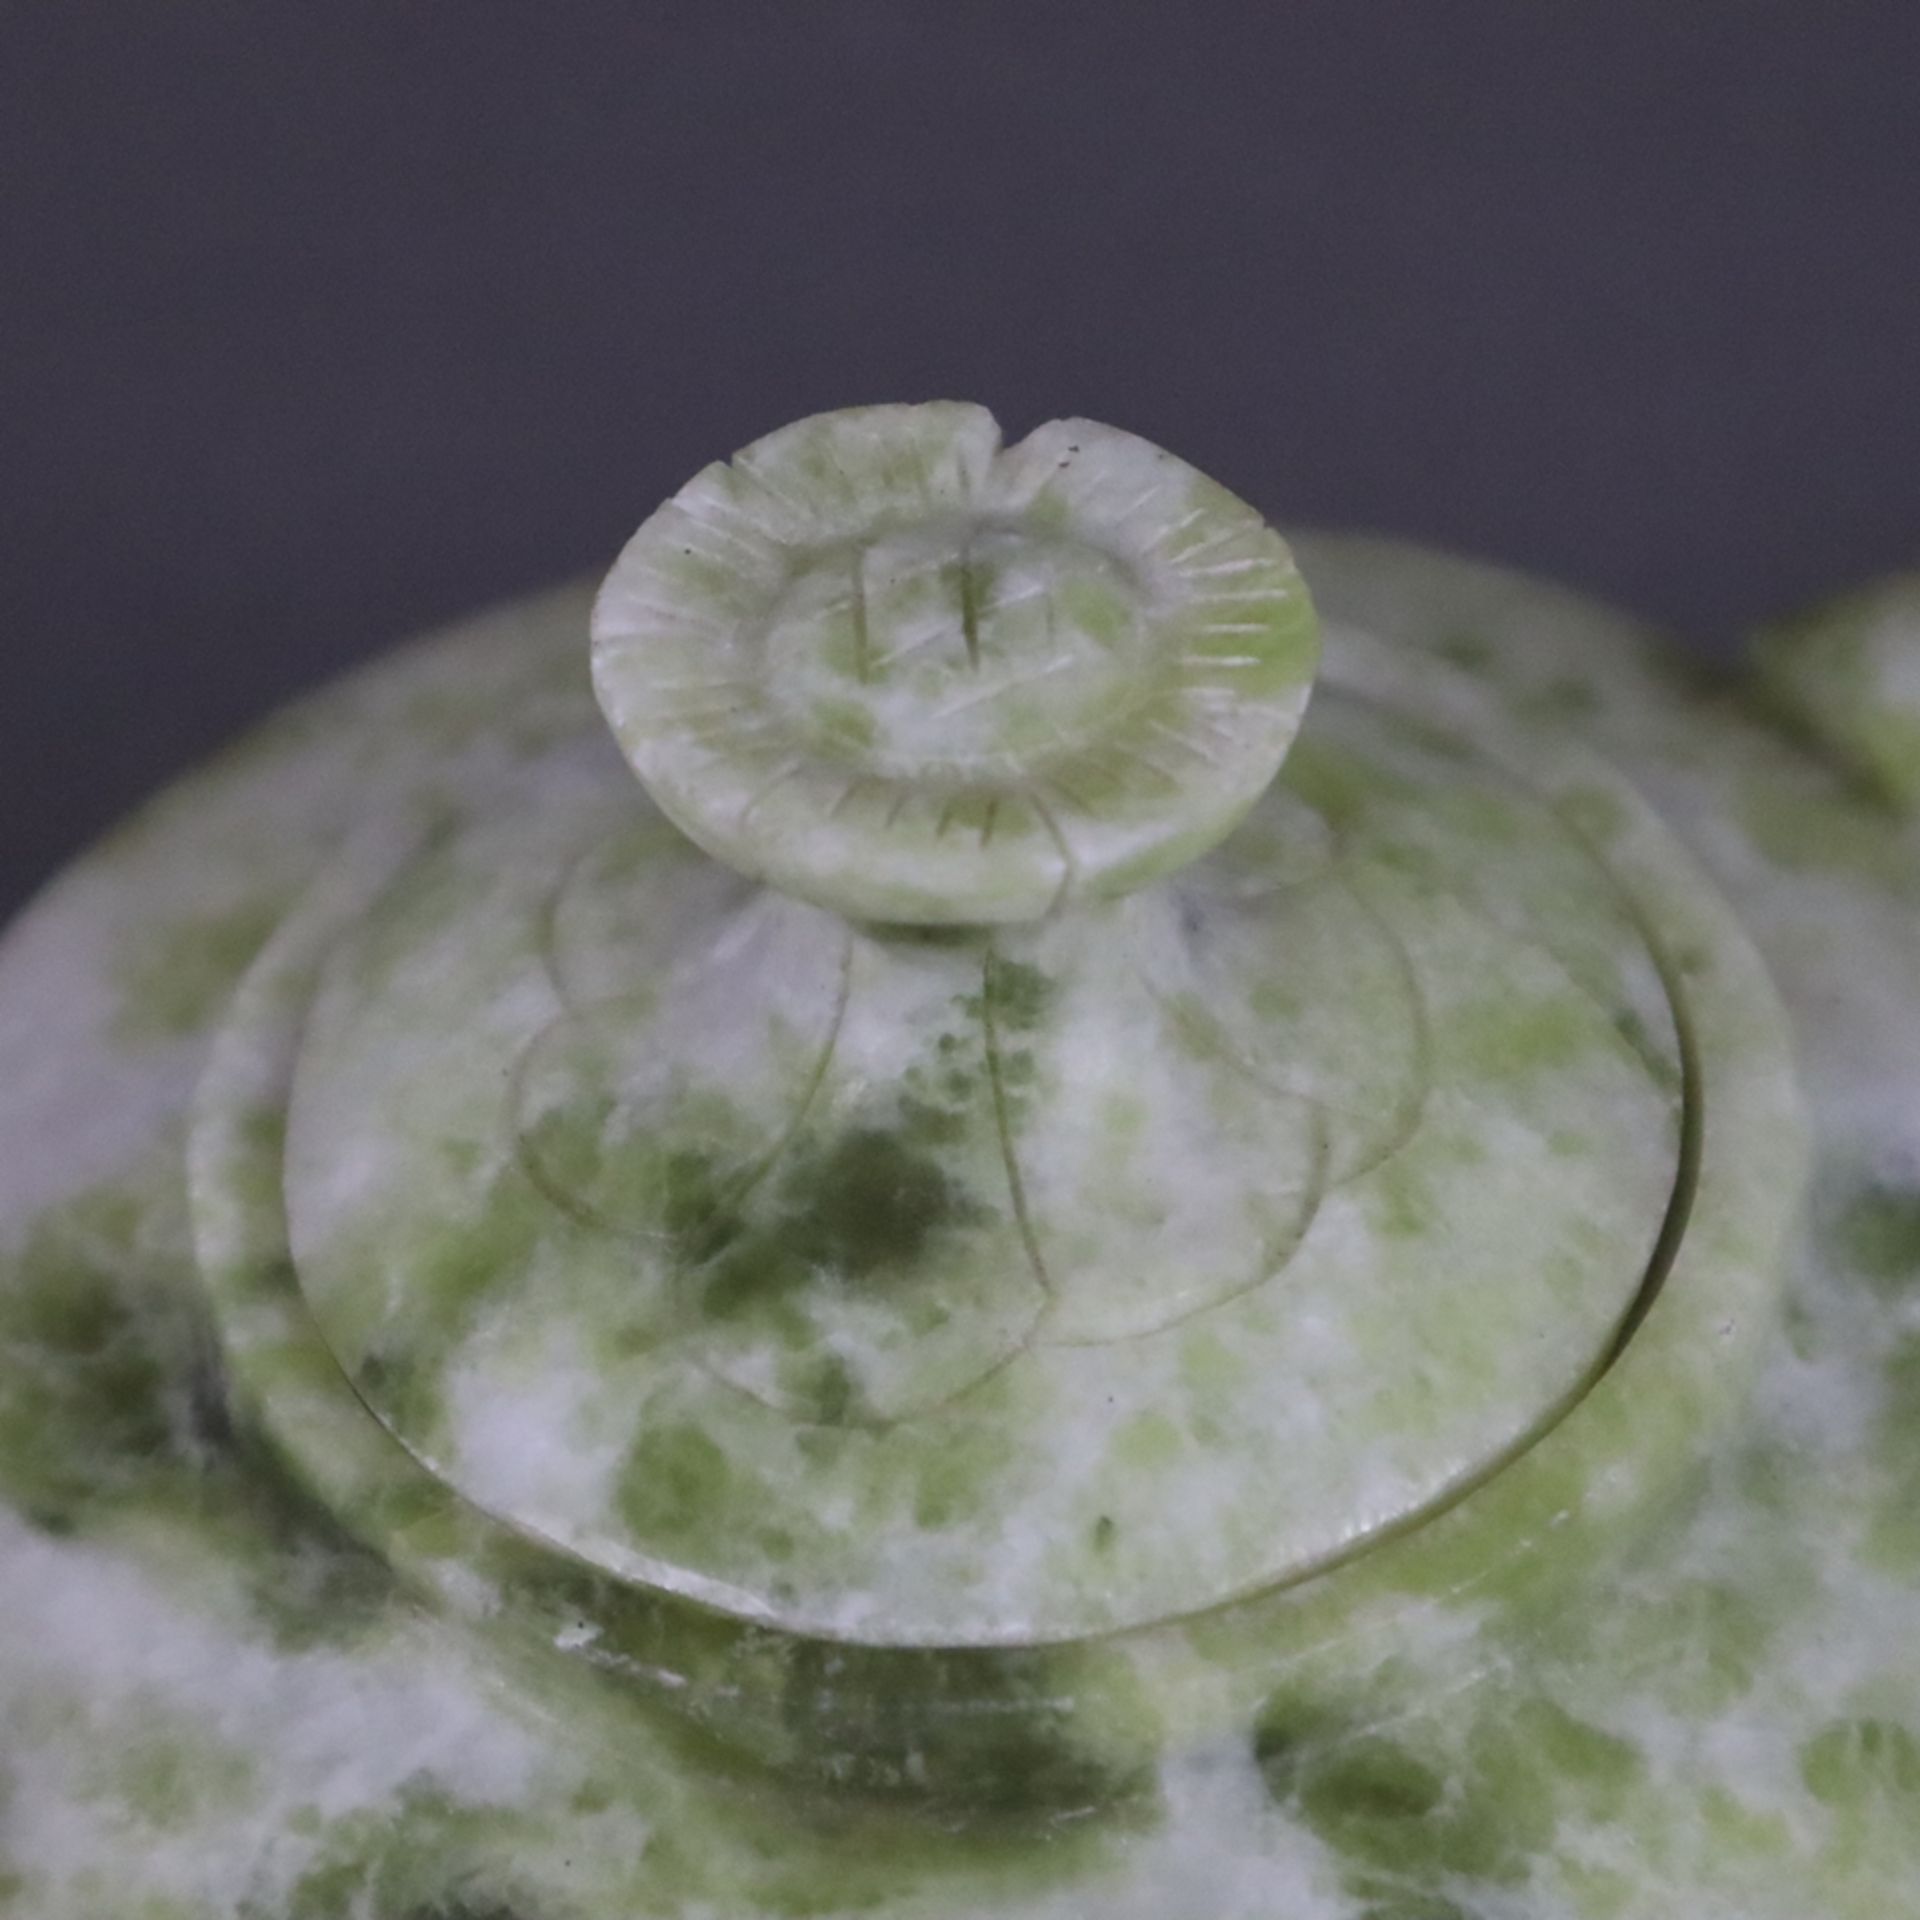 Zierkanne aus Jade - China, Schnitzarbeit aus heller grünlich marmorierter Jade, der Henkel ist ver - Bild 2 aus 8